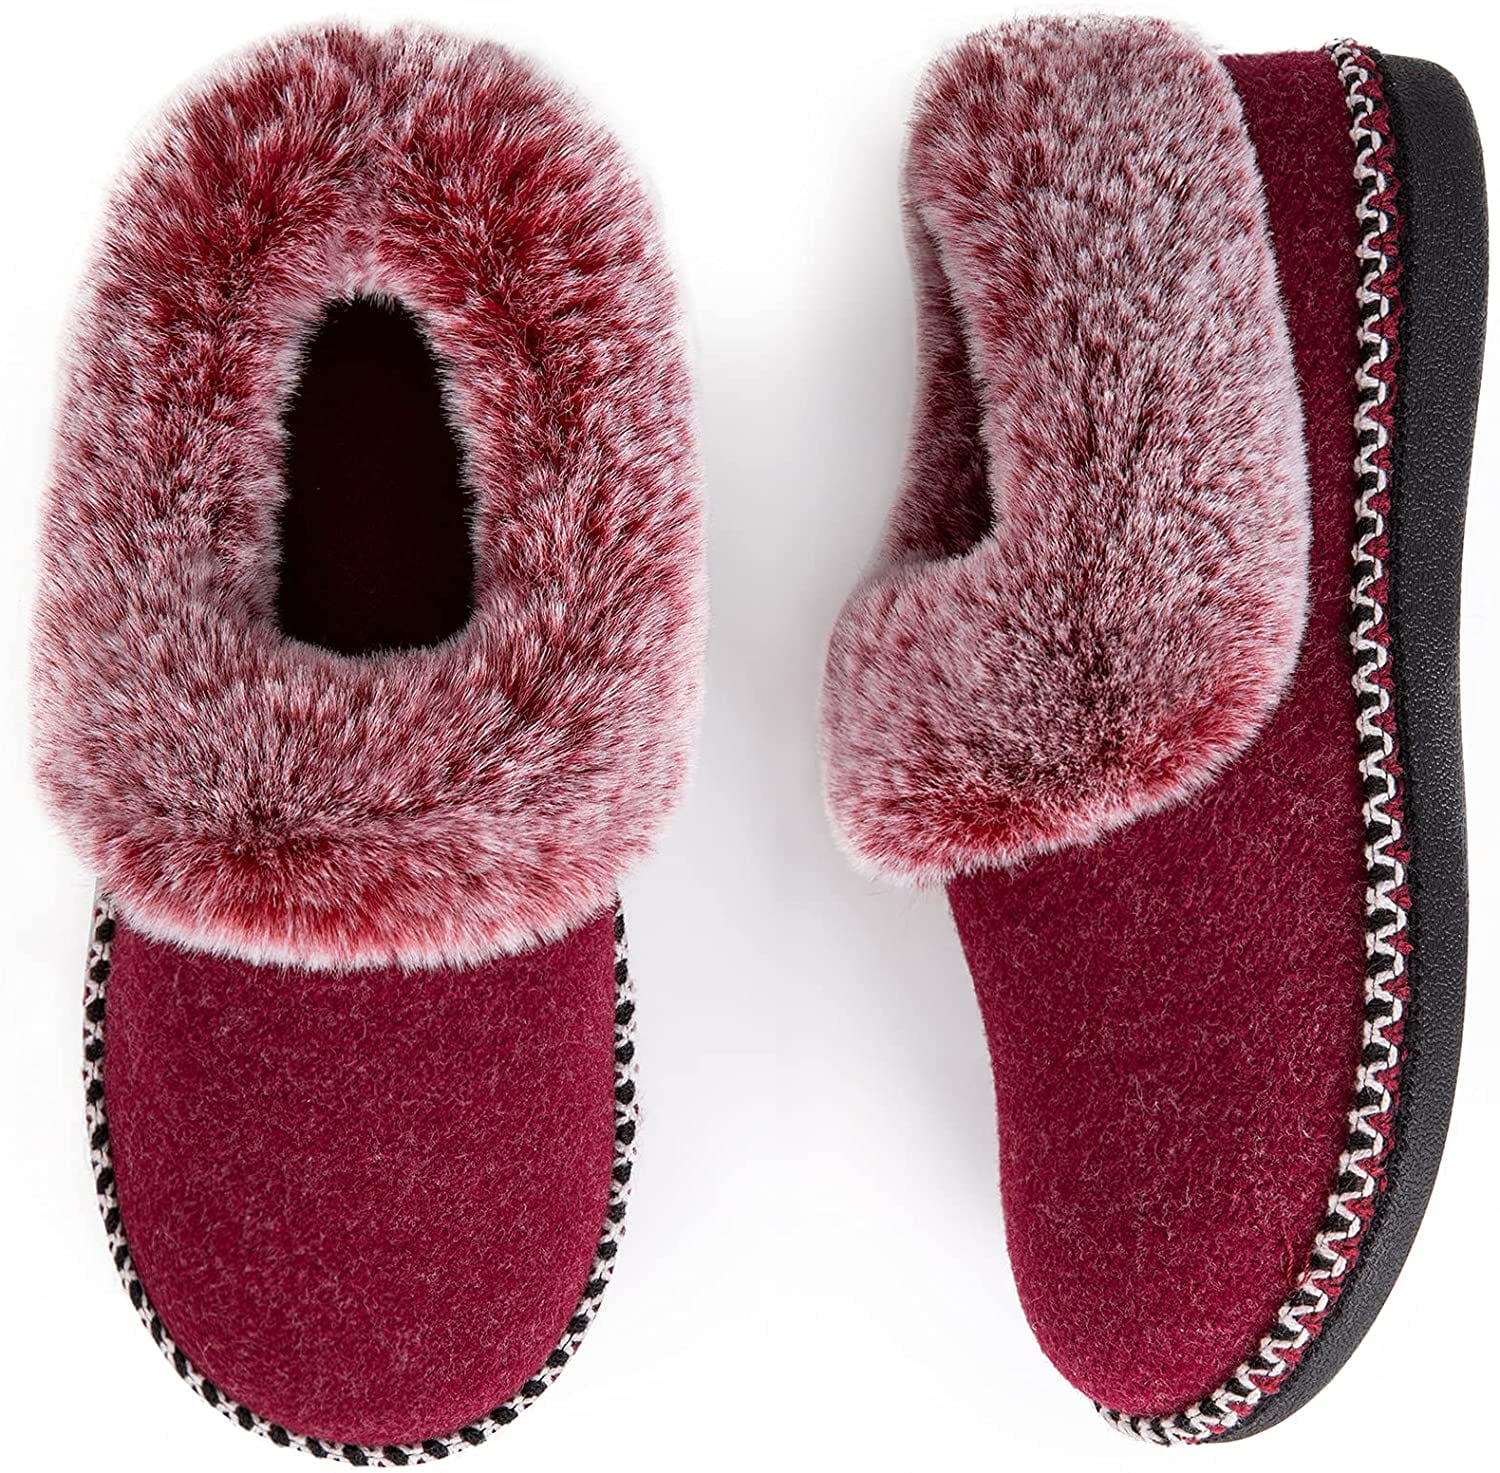 EverFoams Ladies' Luxury Wool Memory Foam Slippers with Fluffy Faux Fur ...